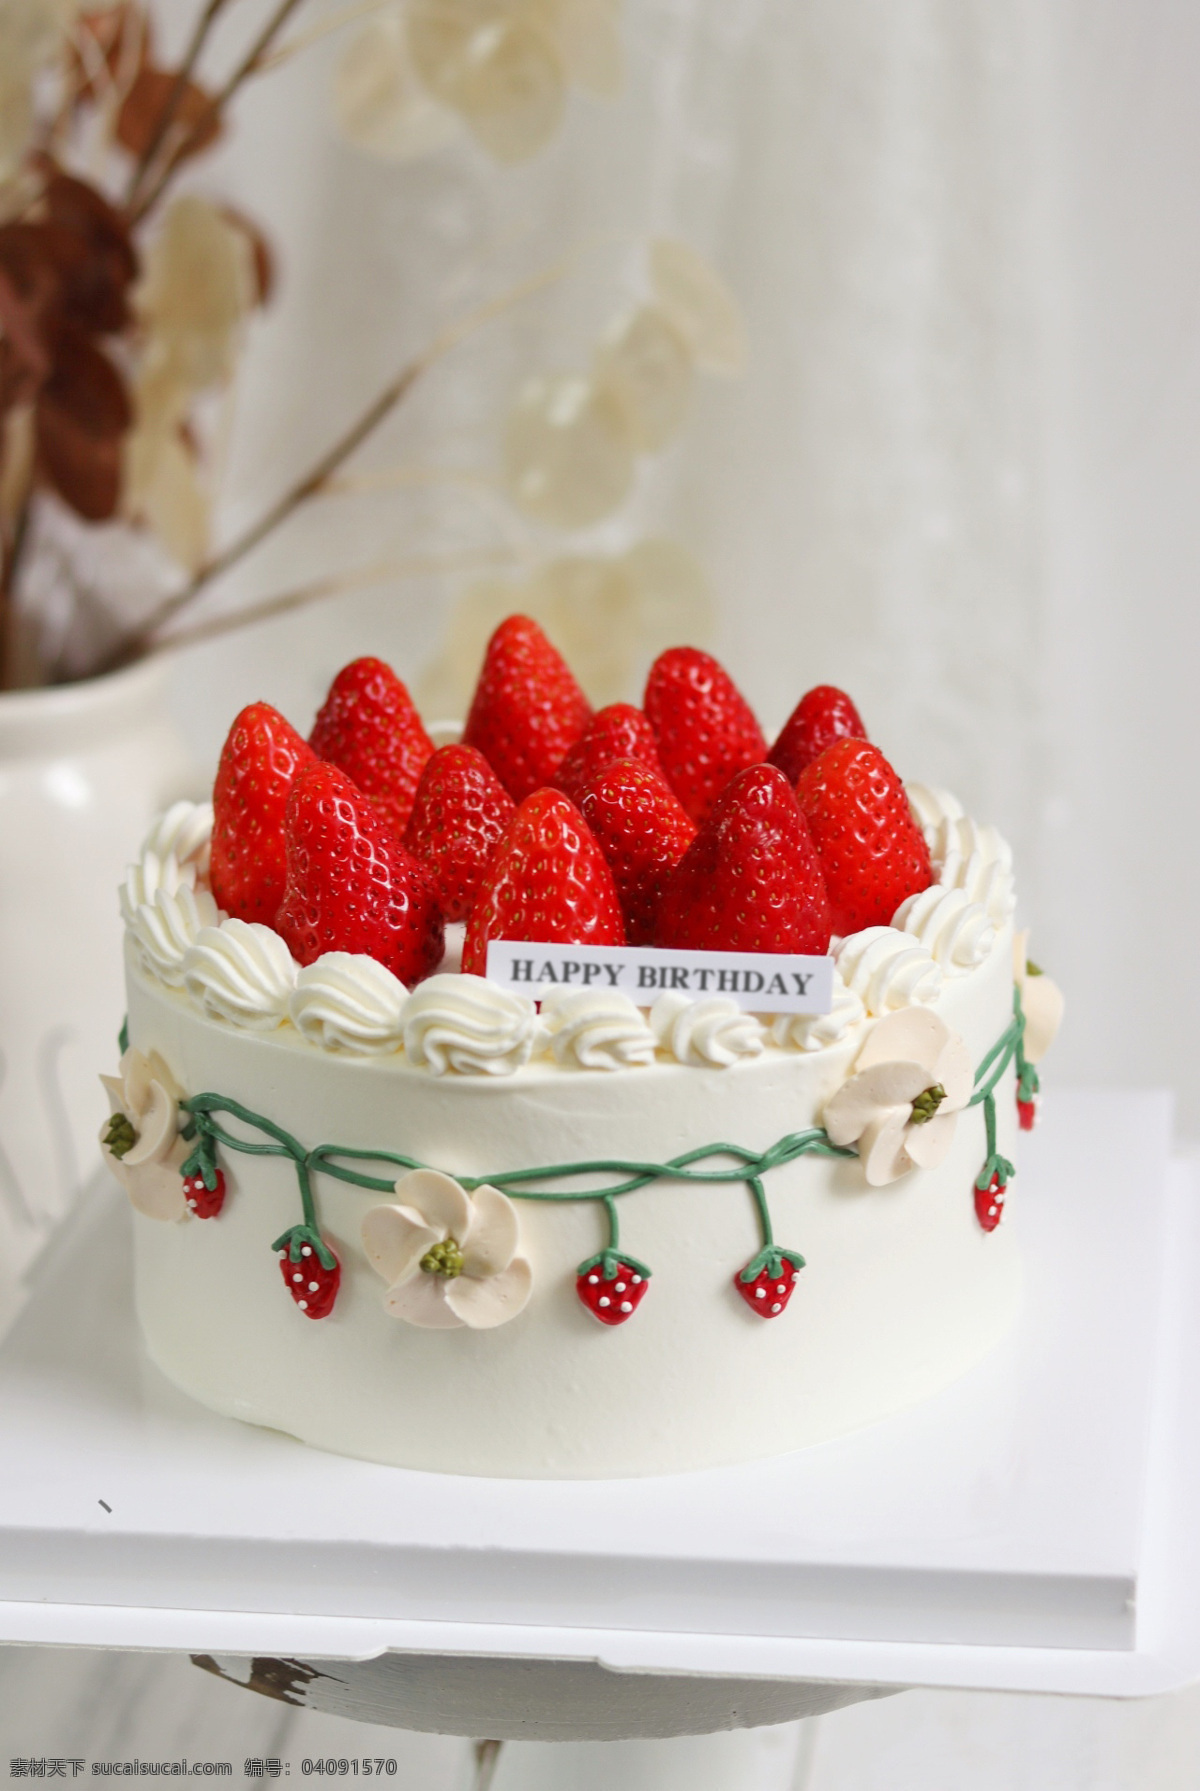 草莓 奶油 蛋糕 草莓蛋糕 生日蛋糕 奶油蛋糕 甜品 生日快乐 餐饮美食